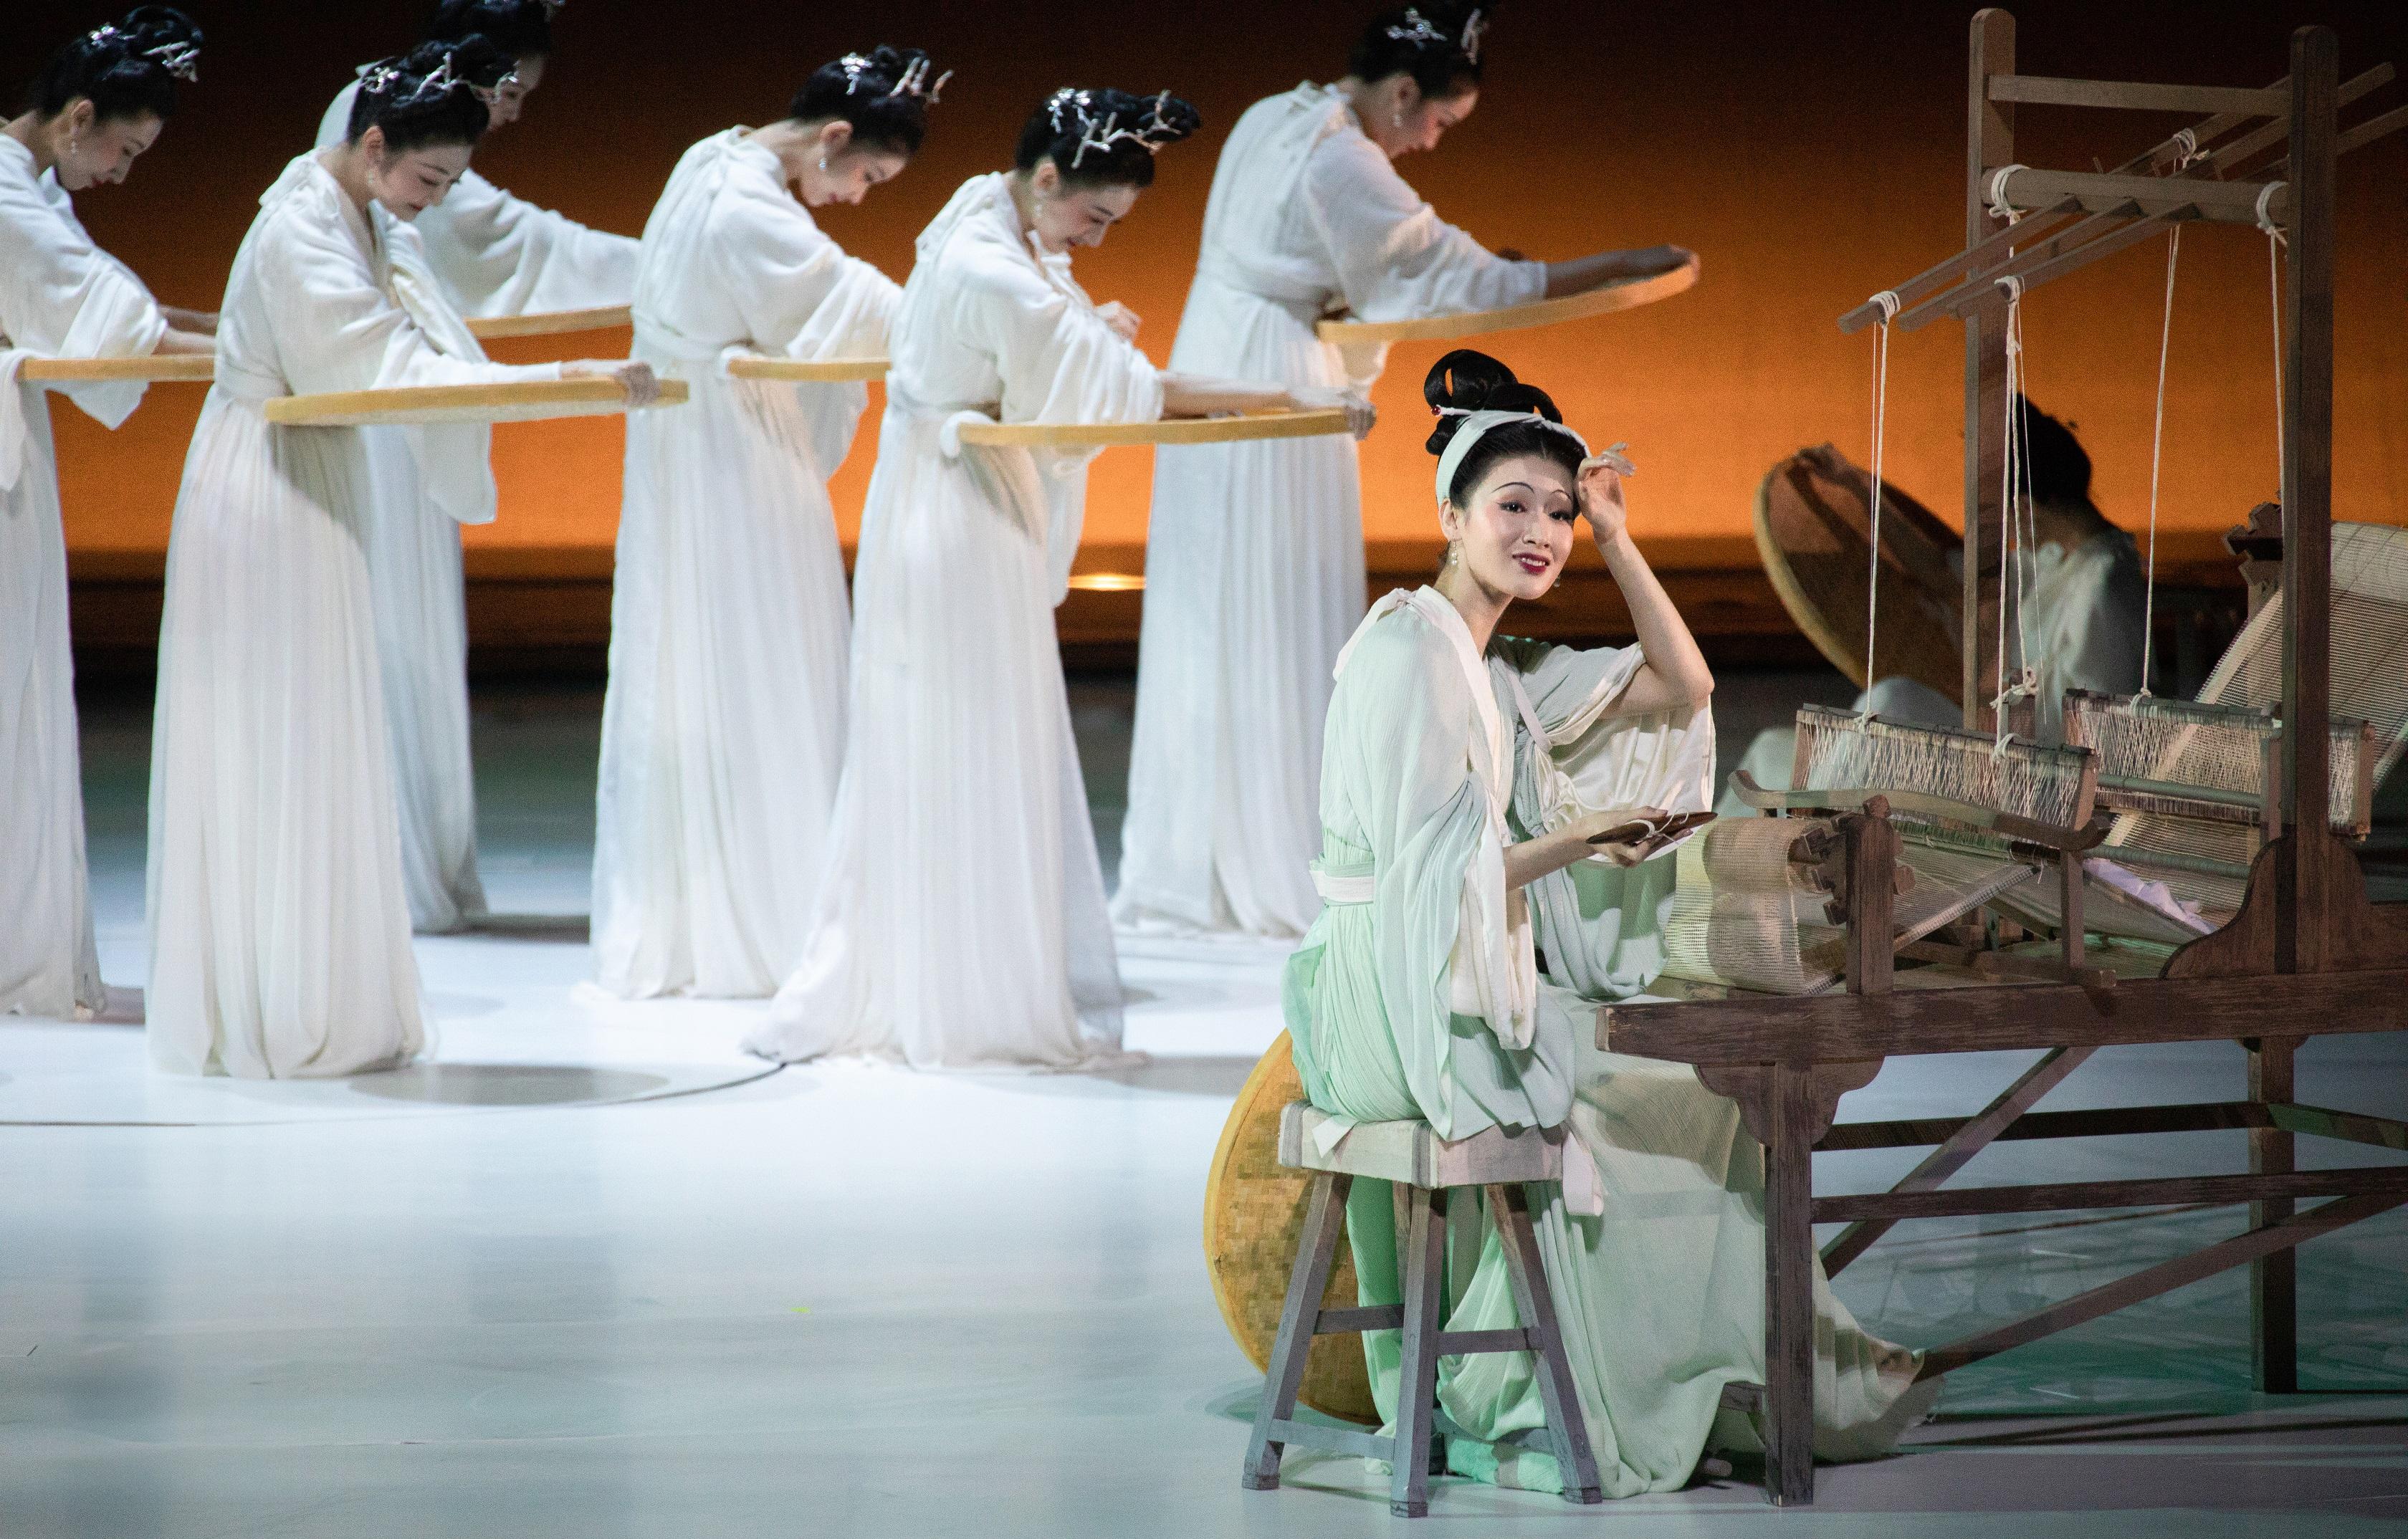 康乐及文化事务署明年一月呈献由中国东方演艺集团创演的得奖舞蹈诗剧《只此青绿》—舞绘《千里江山图》。图示舞蹈诗剧《只此青绿》剧照。